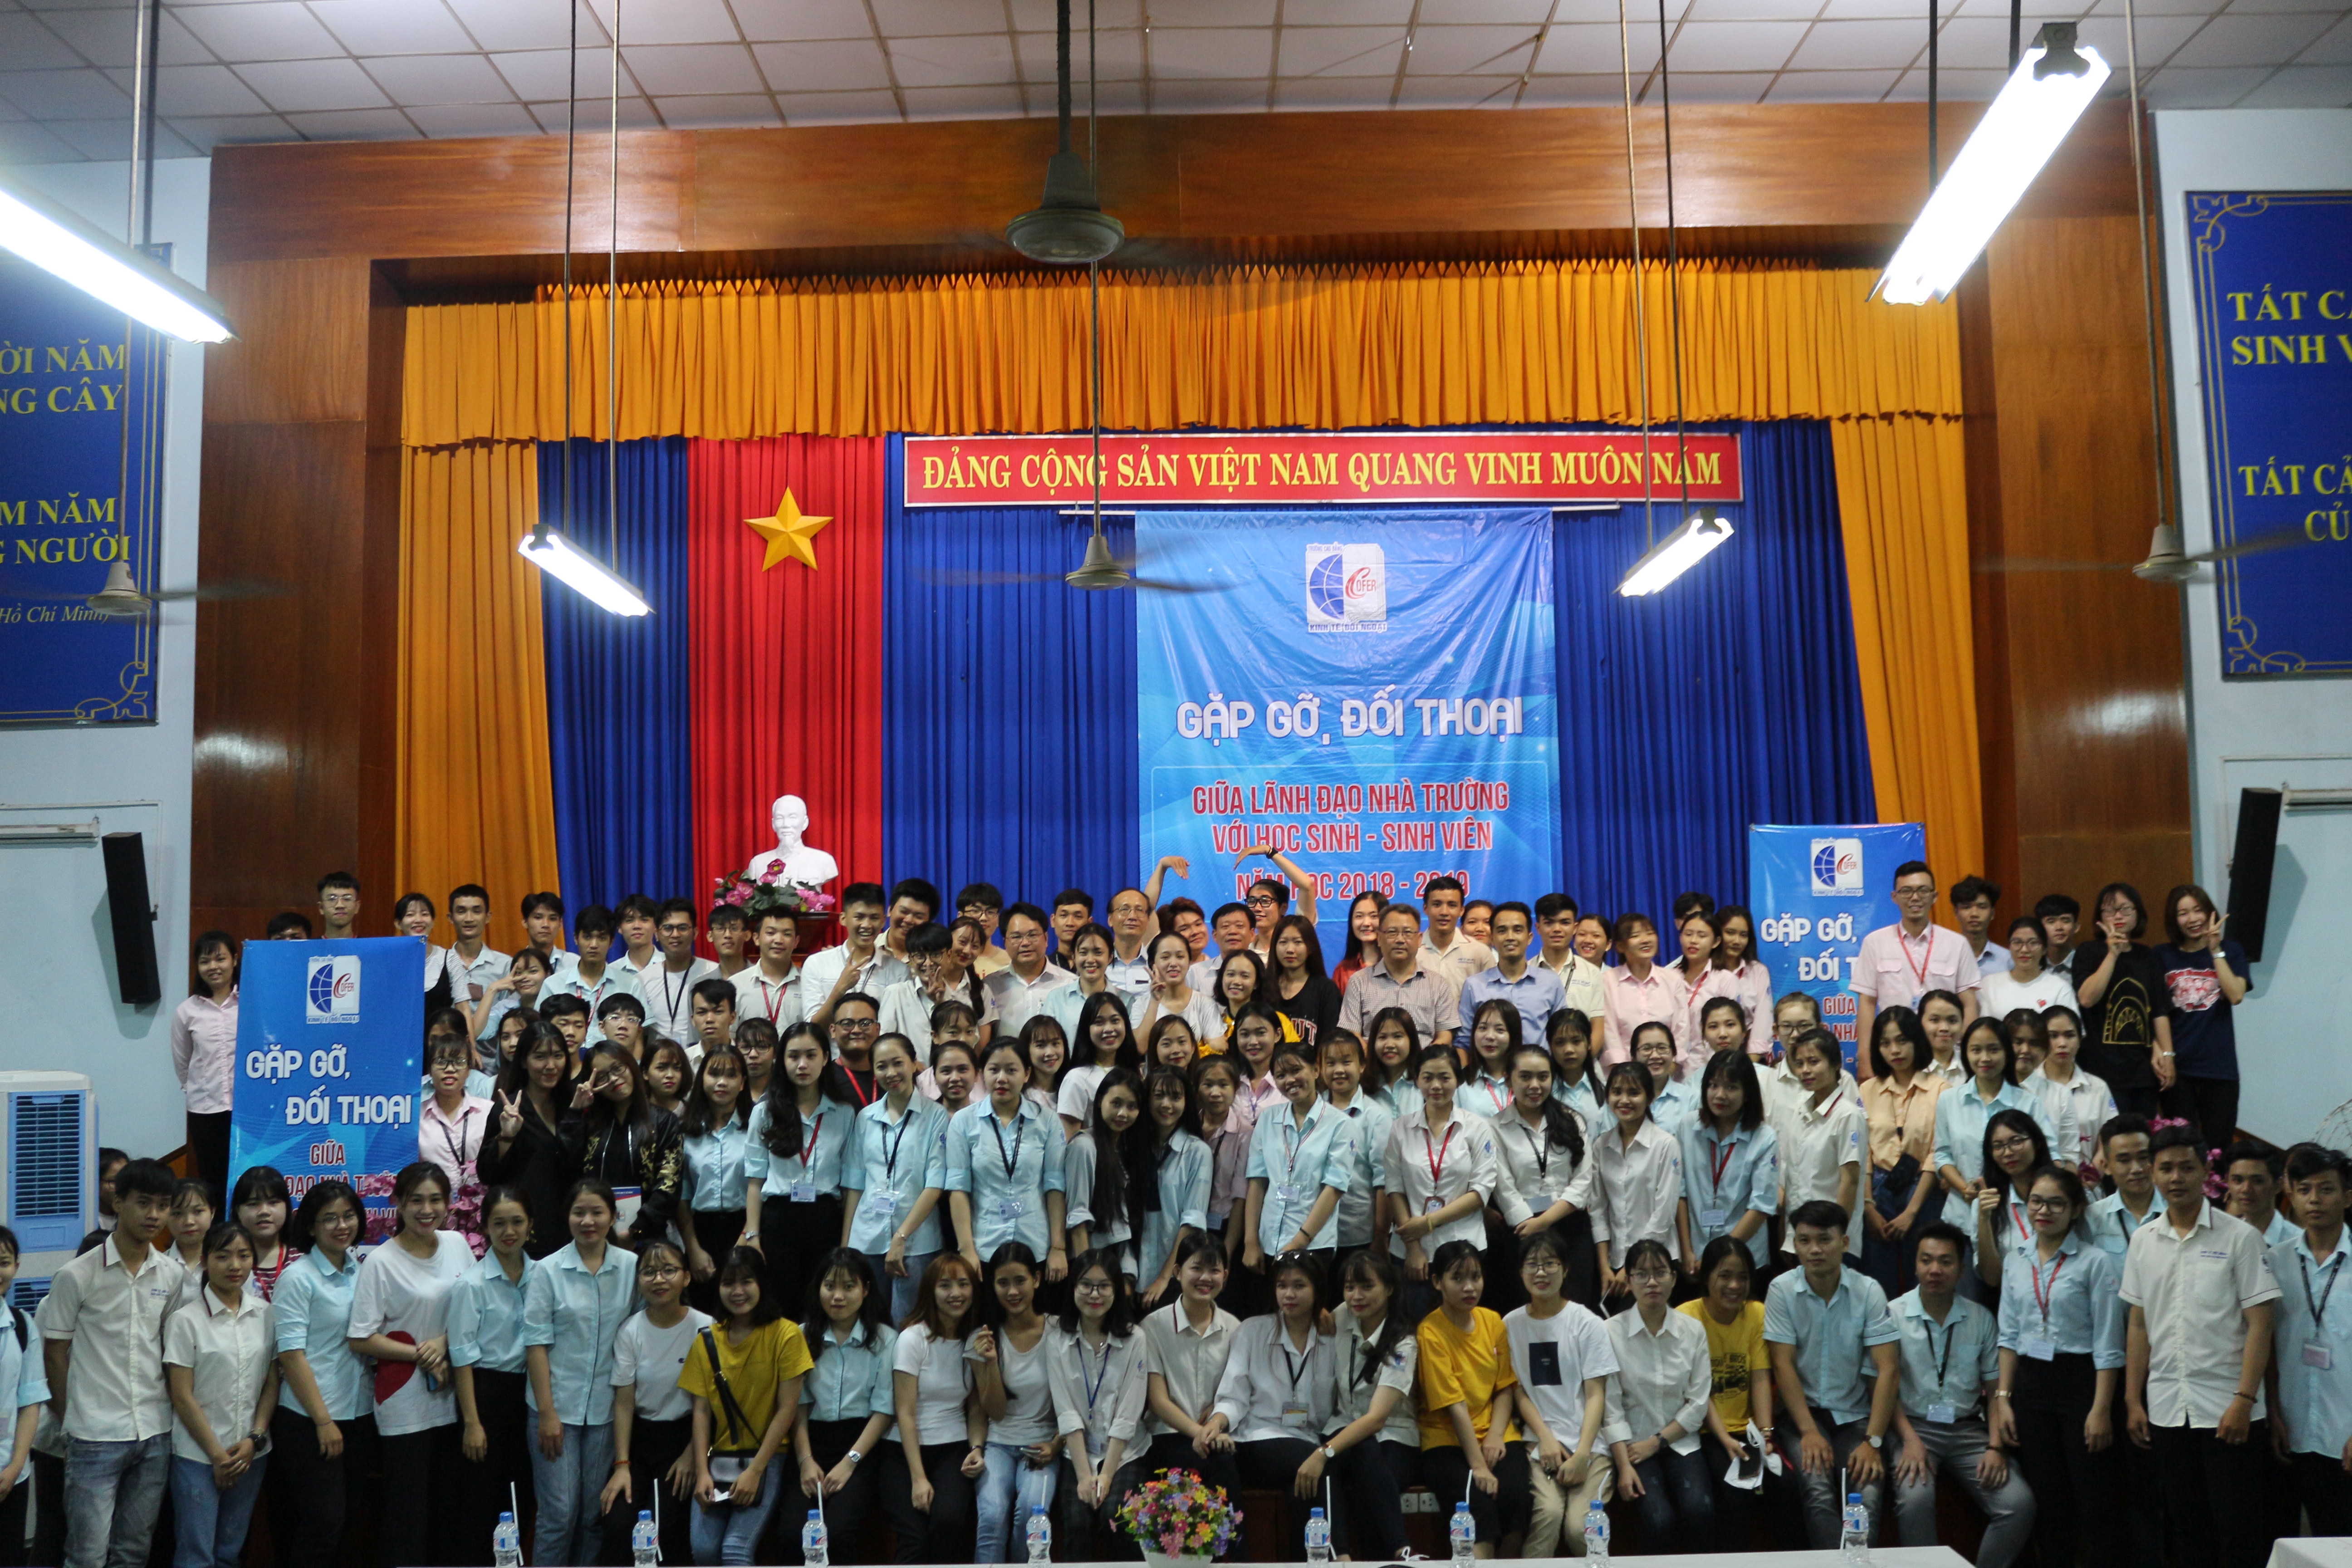 Lãnh đạo nhà trường chụp ảnh lưu niệm với học sinh sinh viên tham gia tại gặp gỡ tại cơ sở Phan Đình Phùng